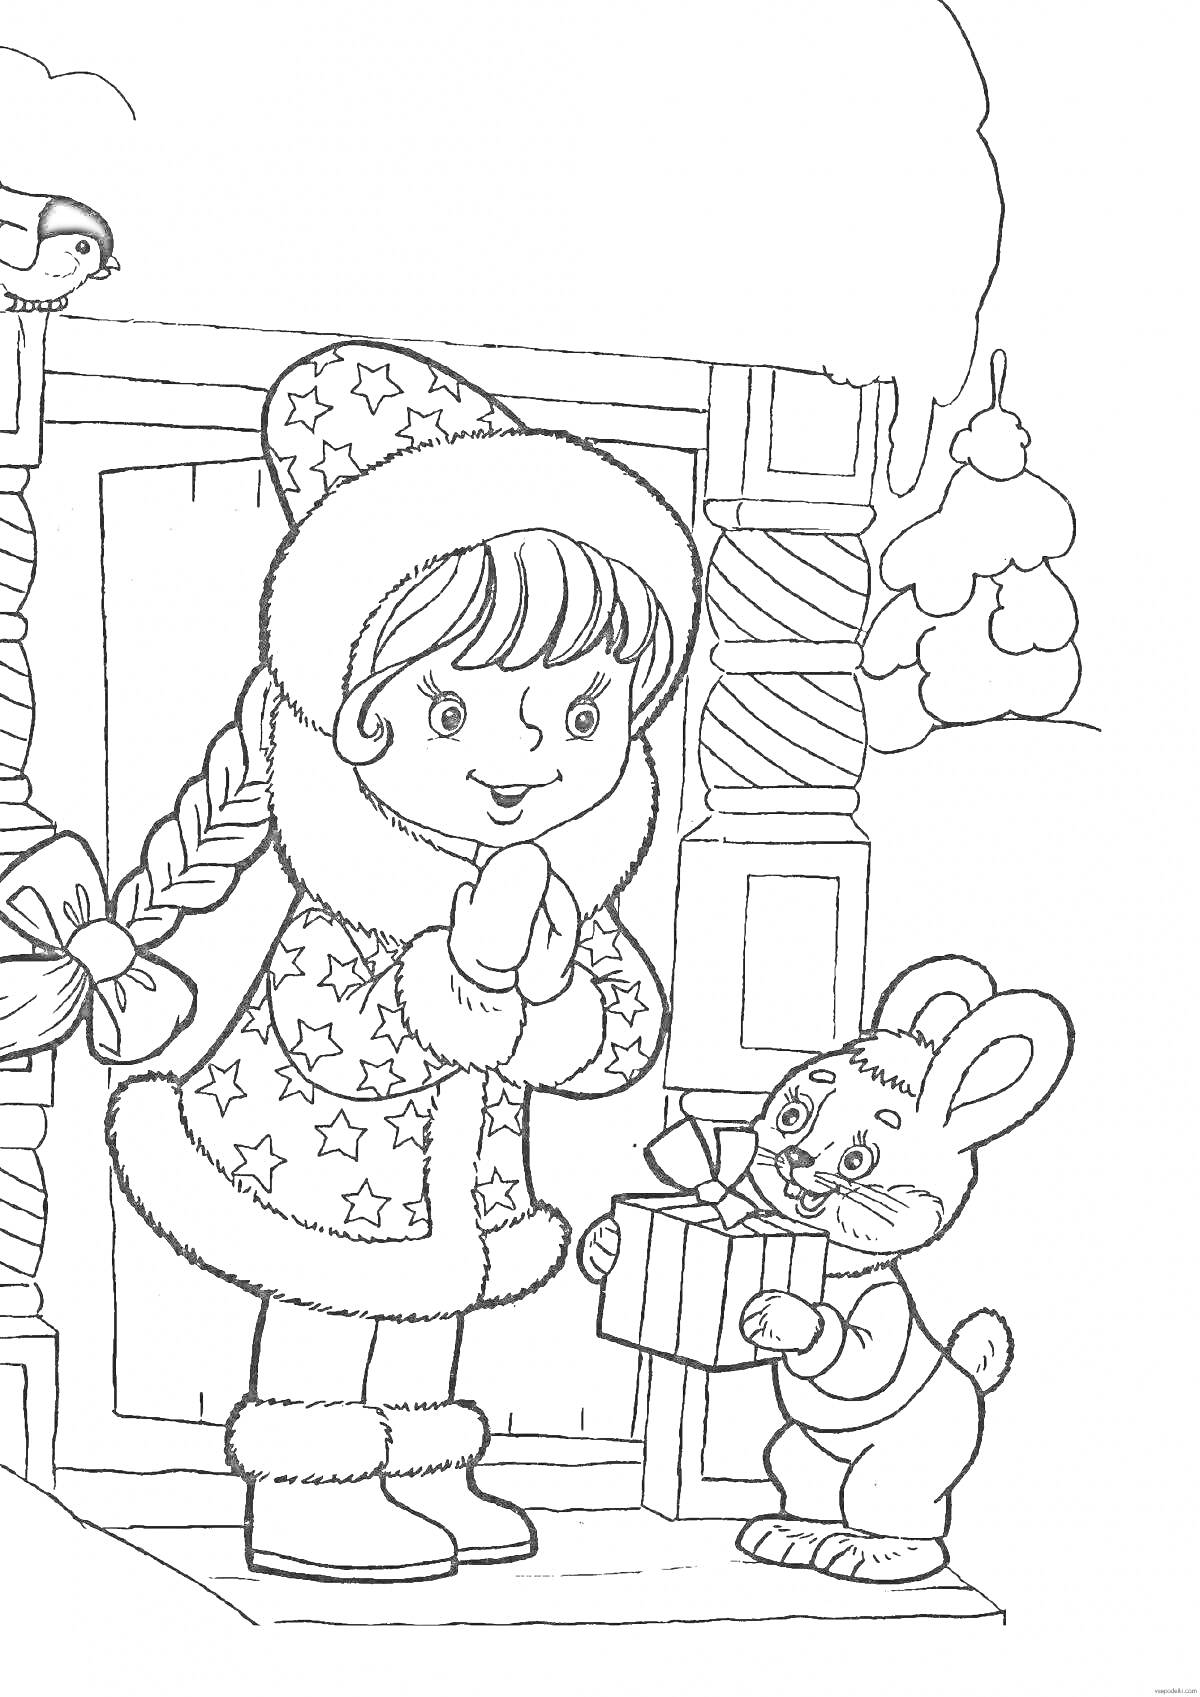 Раскраска Девочка Снегурочка в зимней одежде и плетеной косой, стоящая у домика, леденец на стене, снегирь на крыше и дарящий подарок зайчик